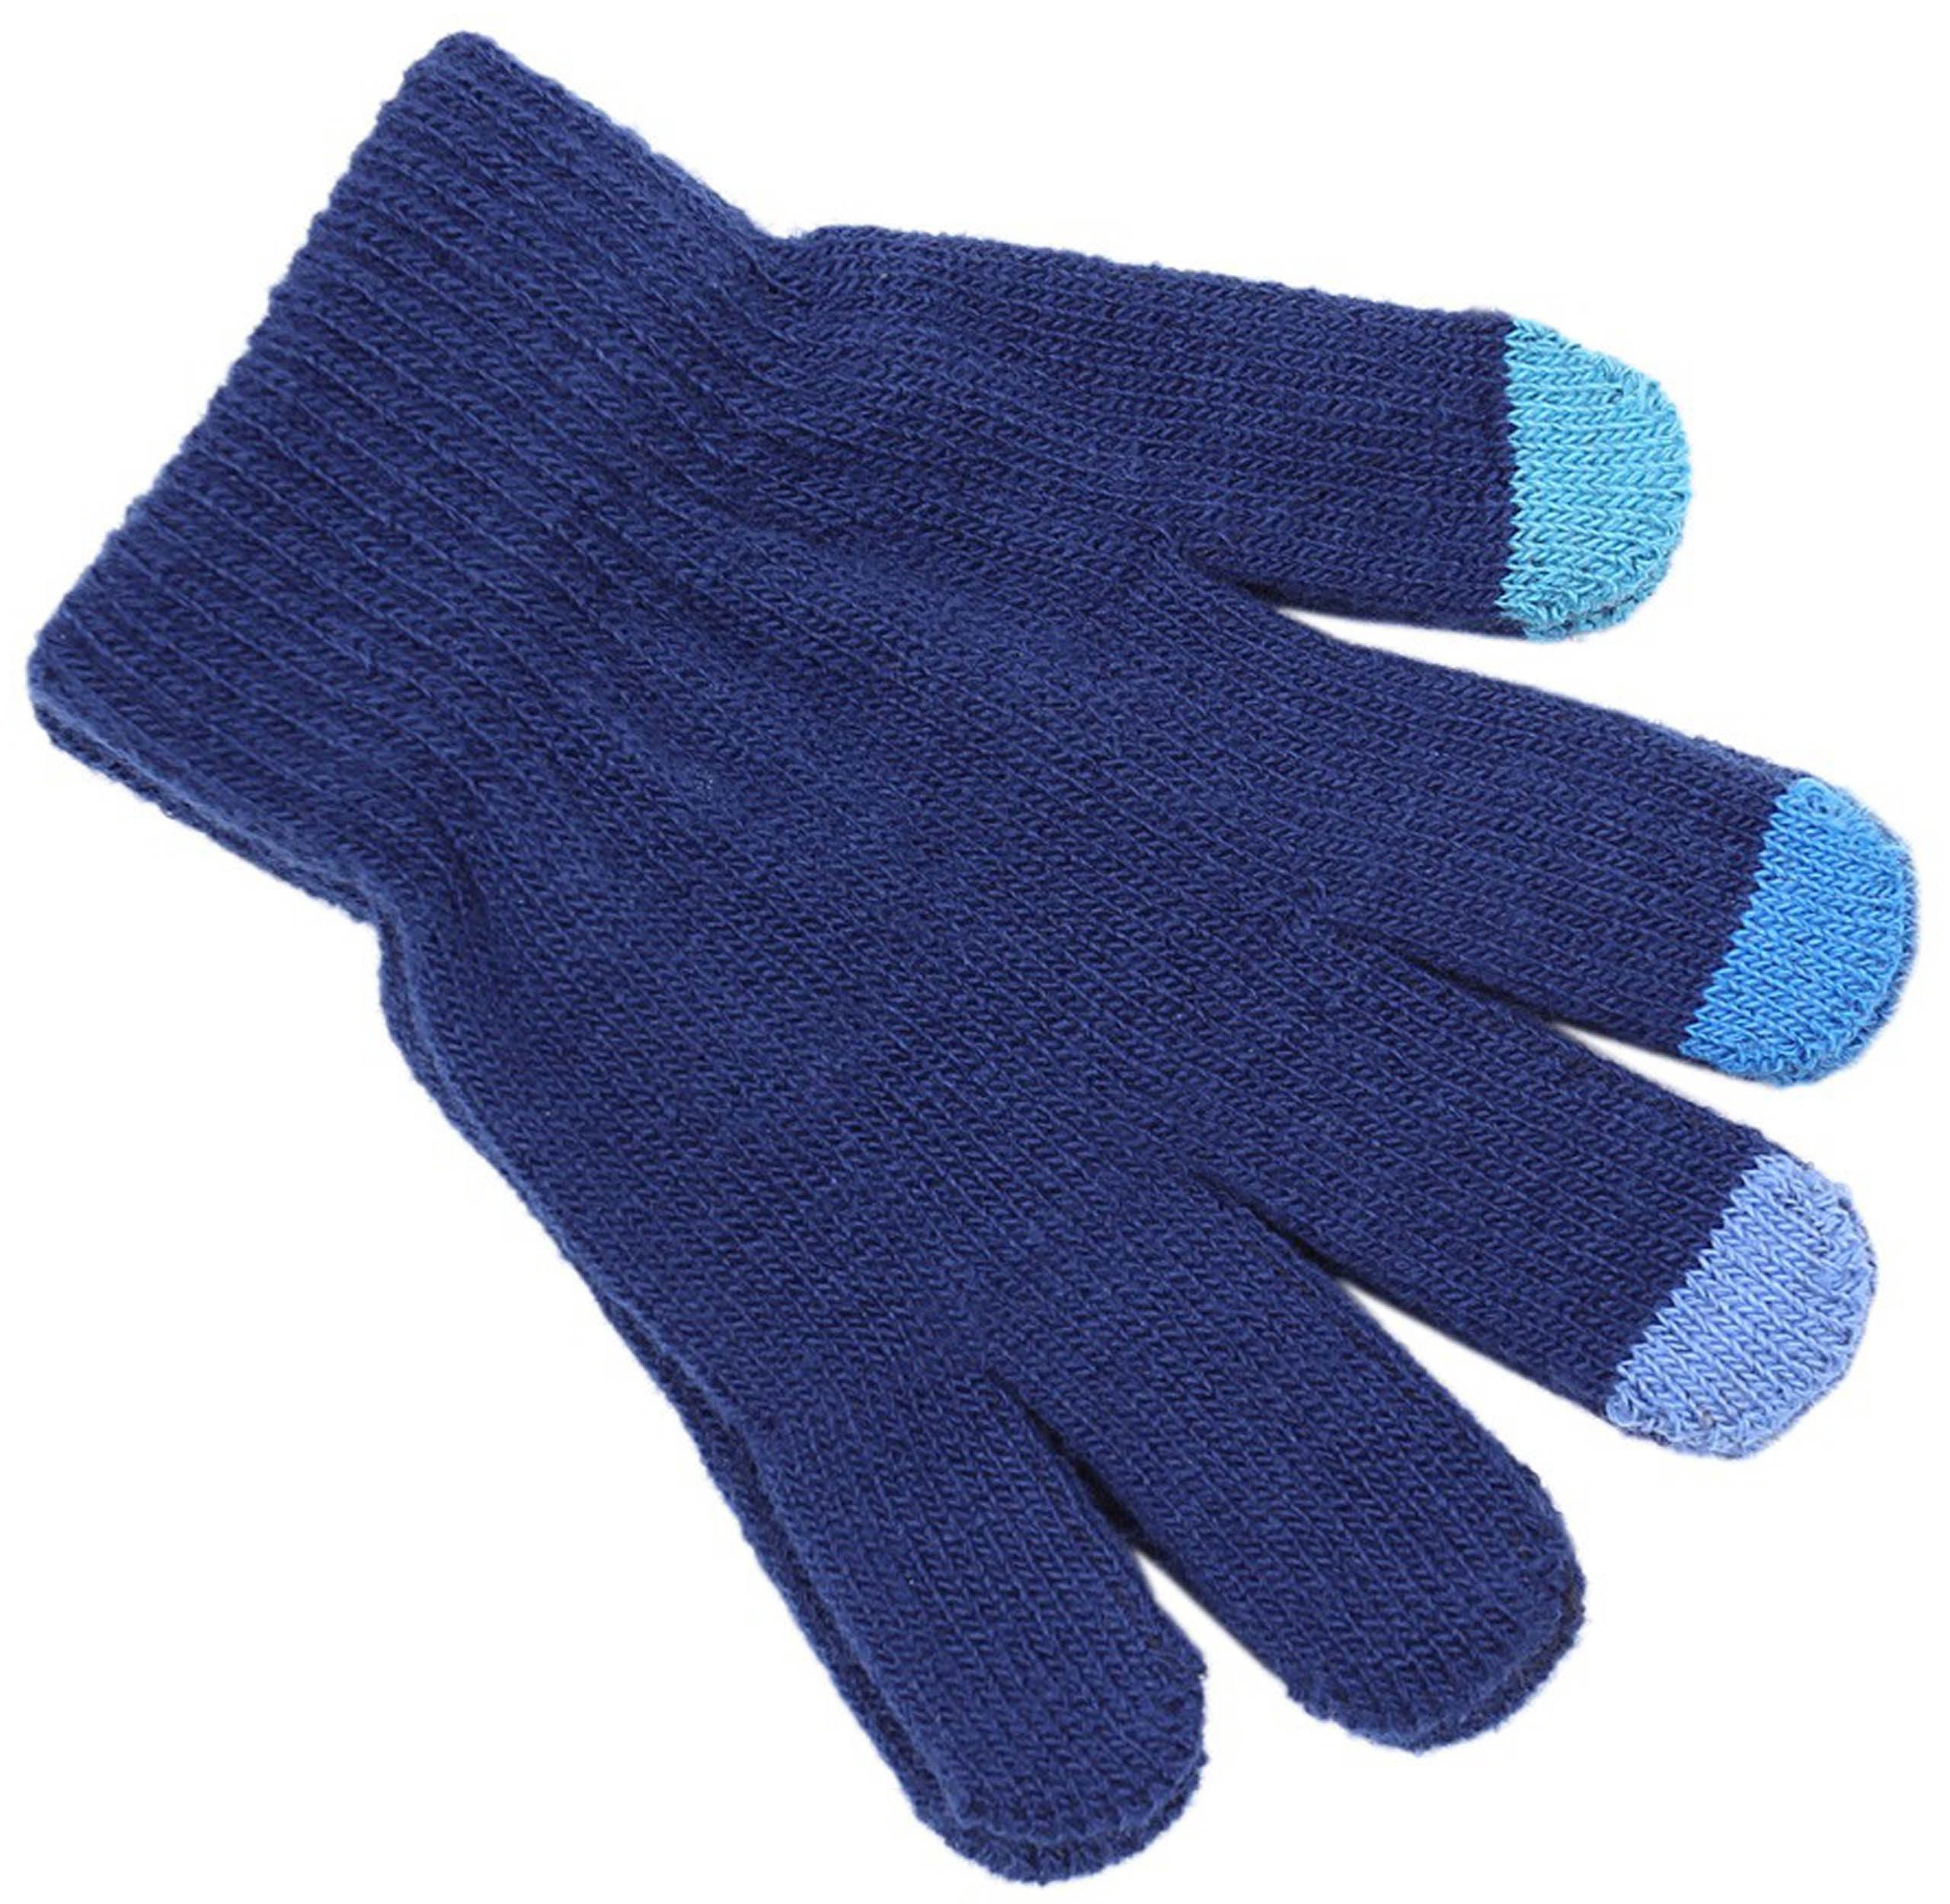 Sarcia.eu Strickhandschuhe REBEL Marineblaue Handschuhe für Touchscreens 7-13 Jahre